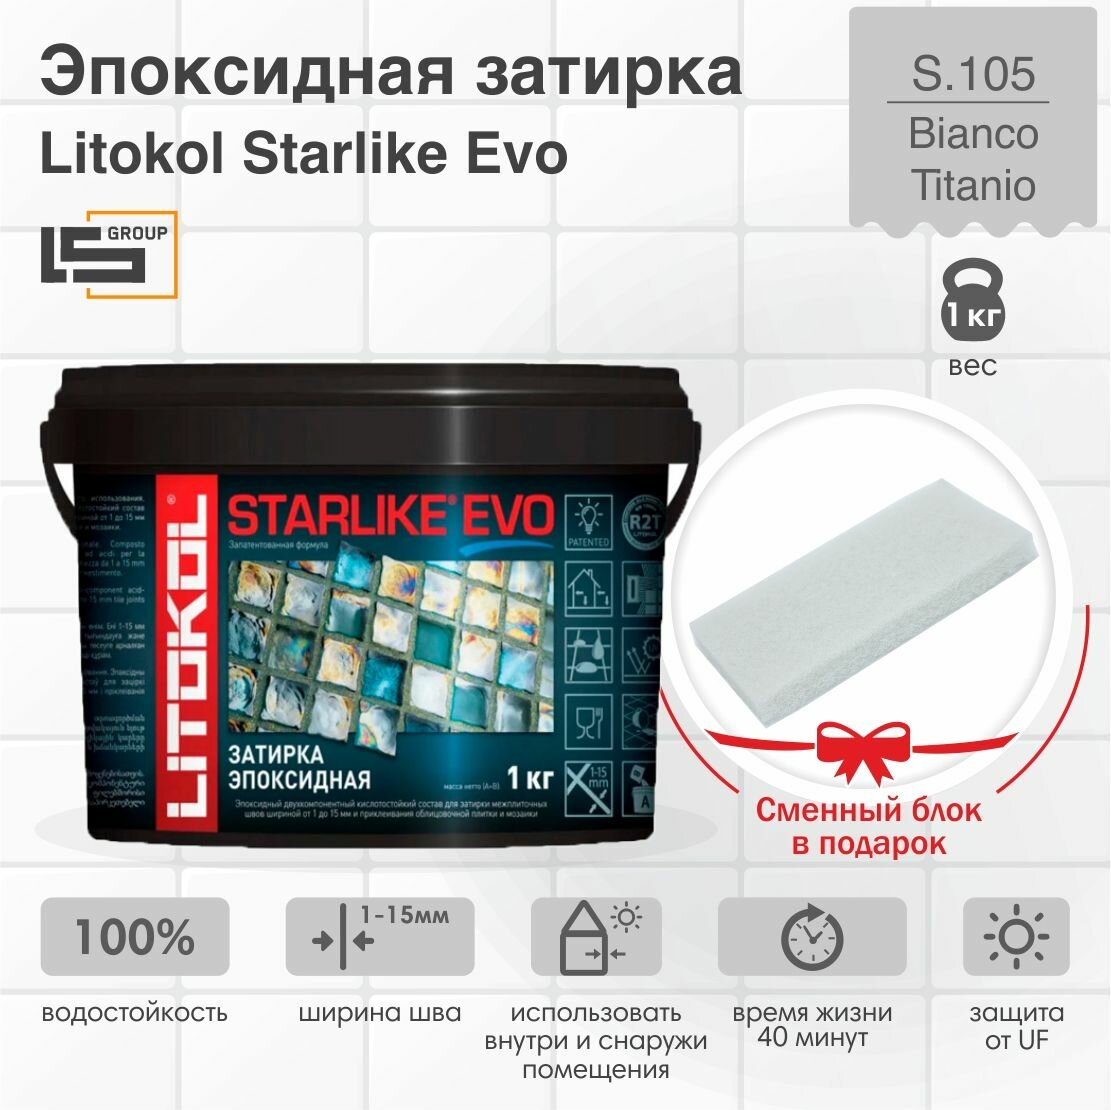 Затирка для плитки эпоксидная LITOKOL STARLIKE EVO (старлайк ЭВО) S.105 BIANCO TITANIO 1кг + Сменный блок в подарок